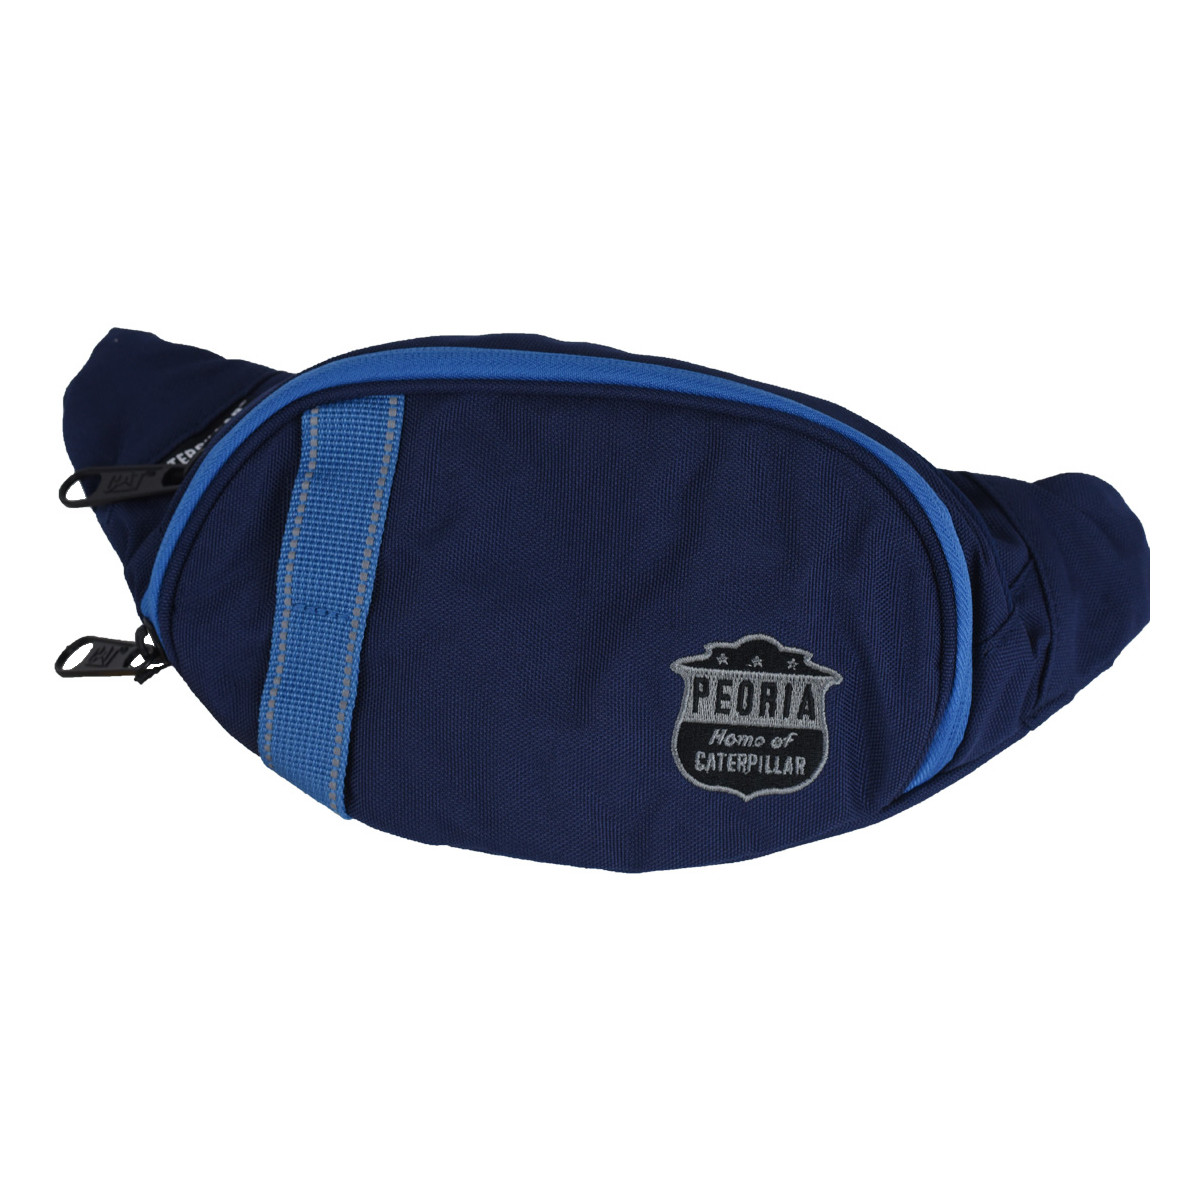 Αθλητική τσάντα Caterpillar Peoria Waist Bag